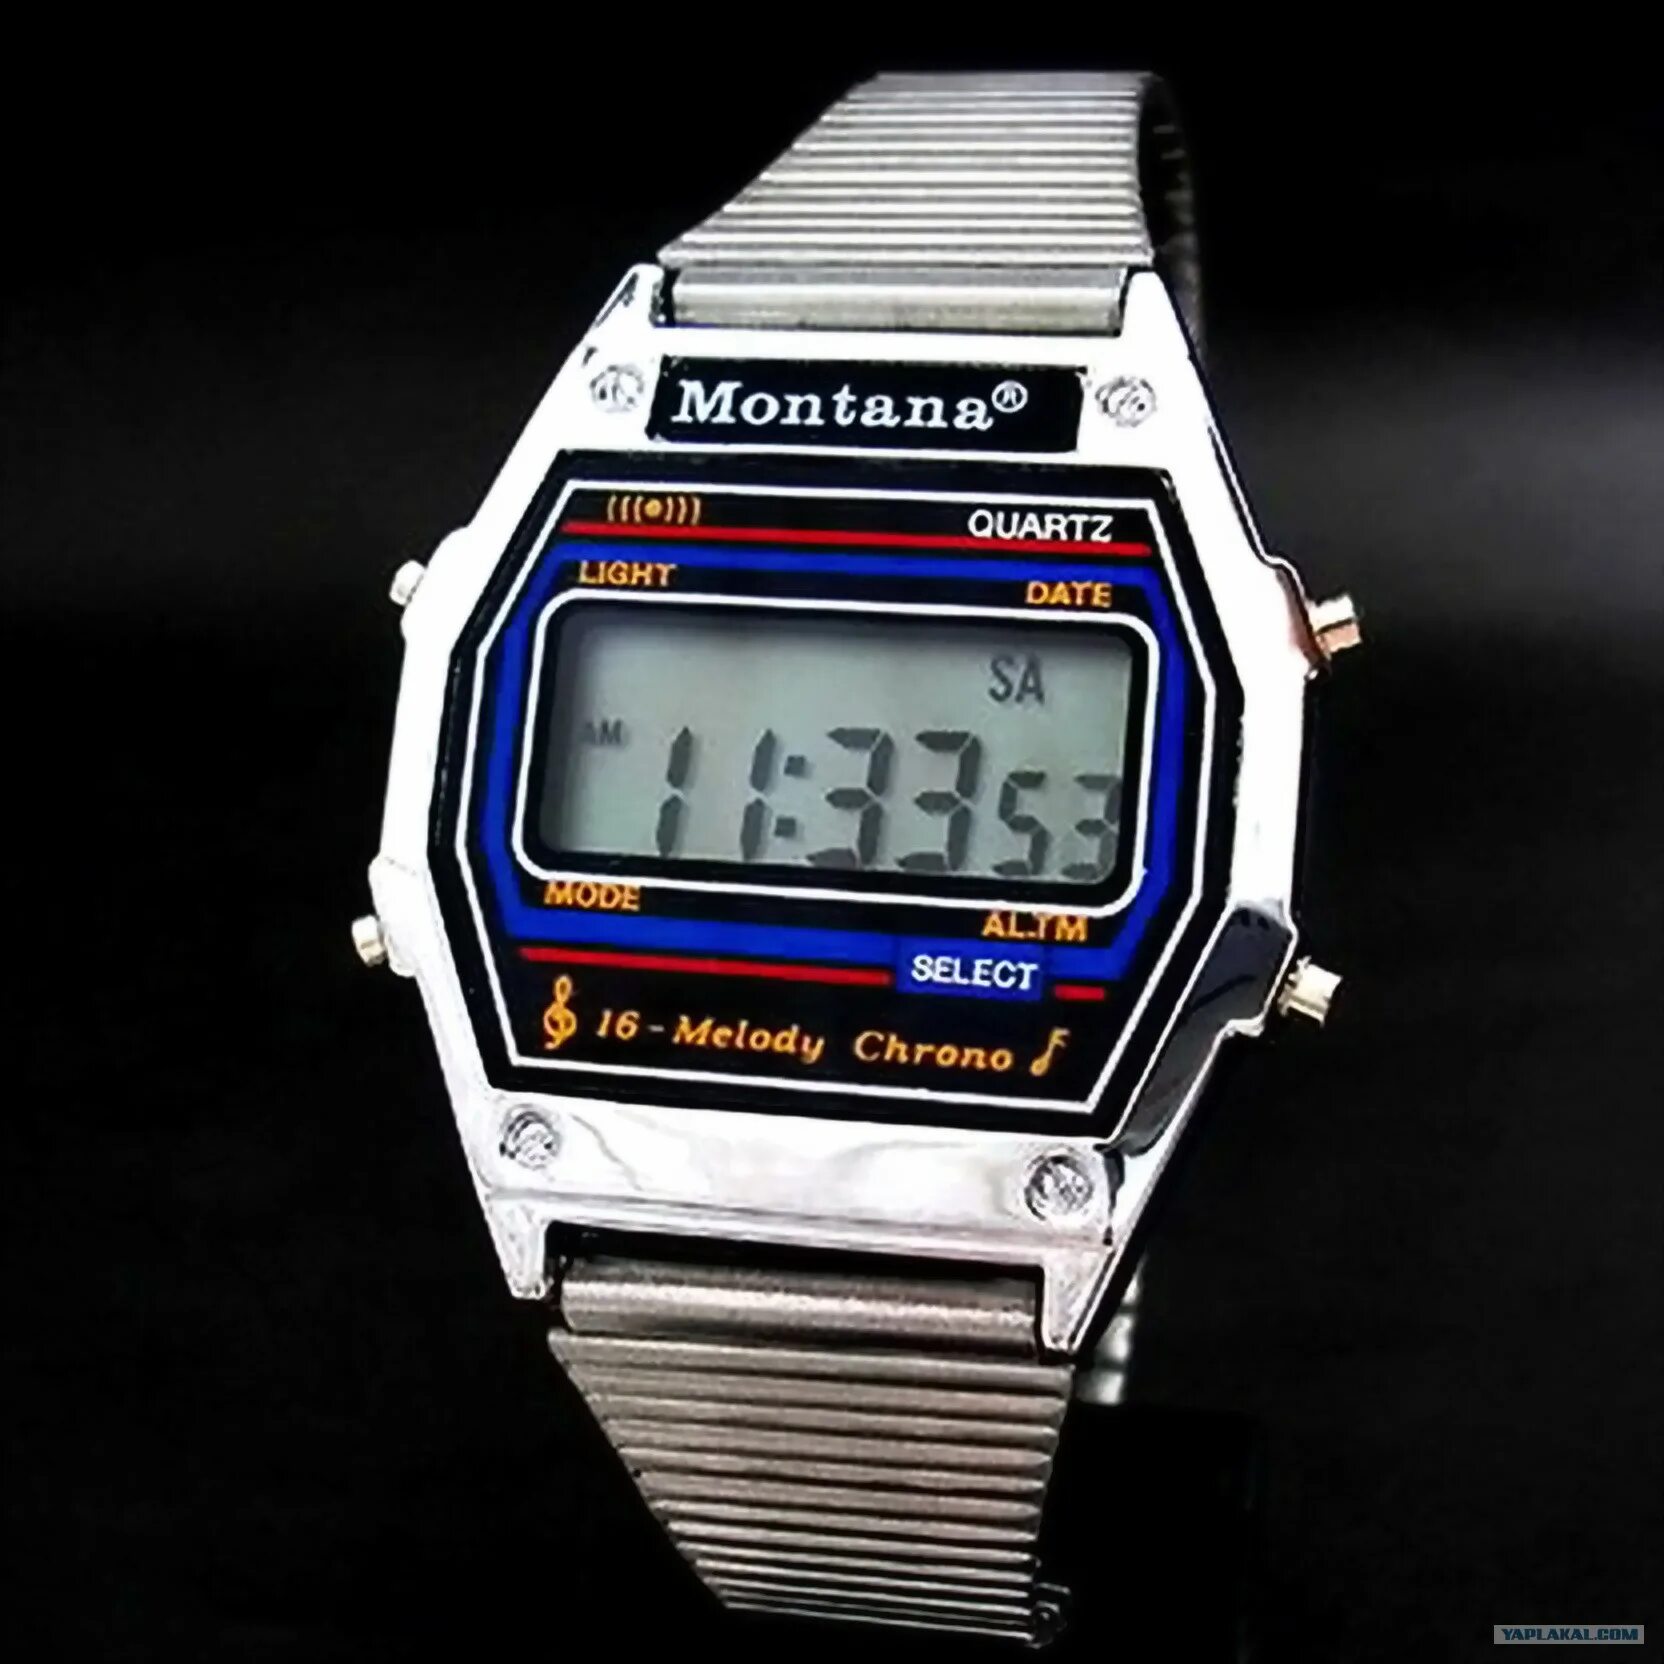 Монтана часы 90-е. Электронные часы Монтана 90-х. Часы Монтана 80. Часы монтана 90 х оригинал